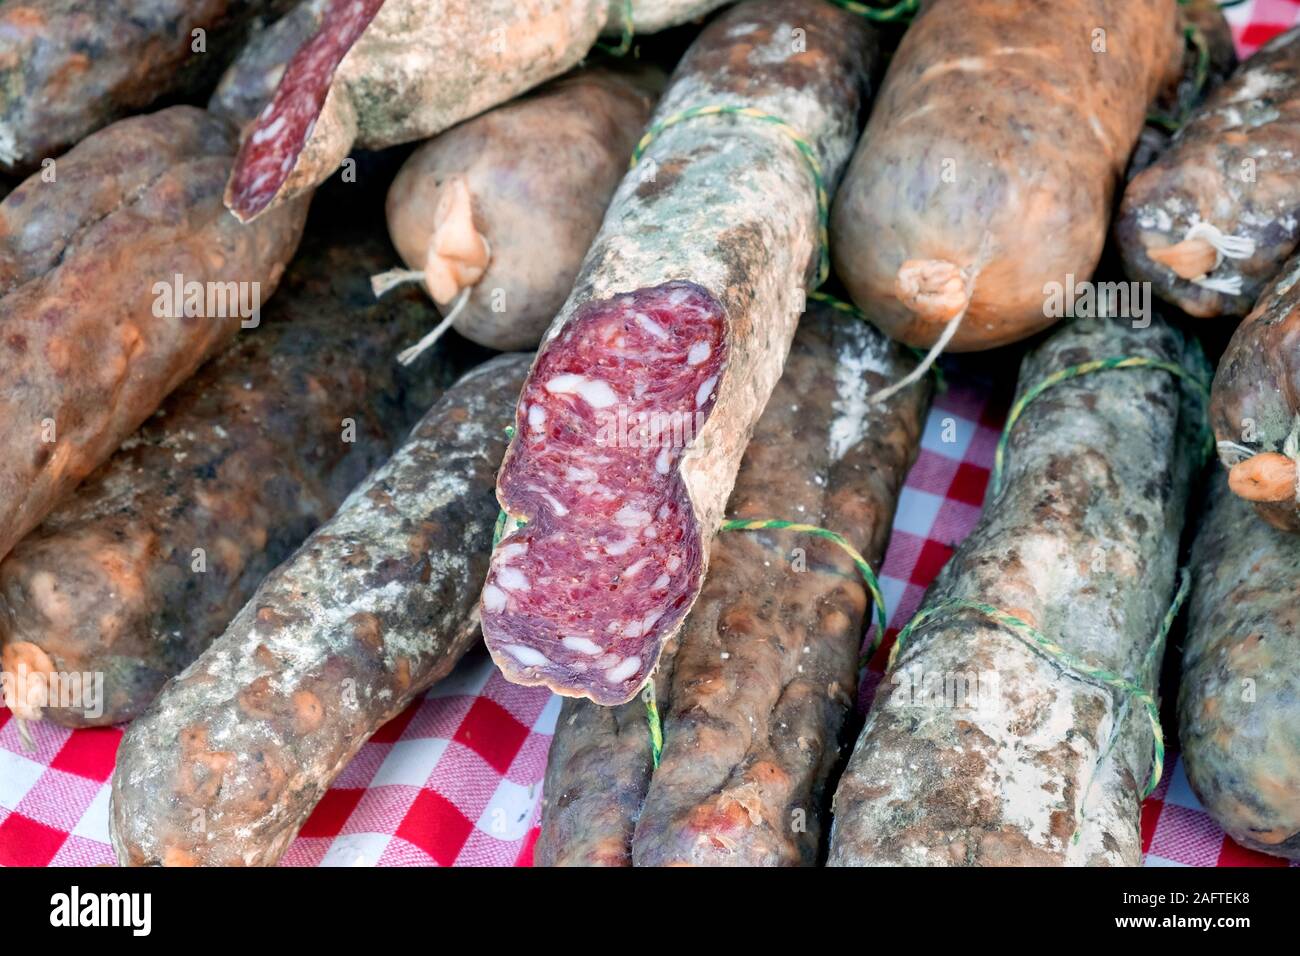 Saucisses à la vente au marché d'Arles, Boulevard des Lices, Arles, Provence, France, Europe Banque D'Images